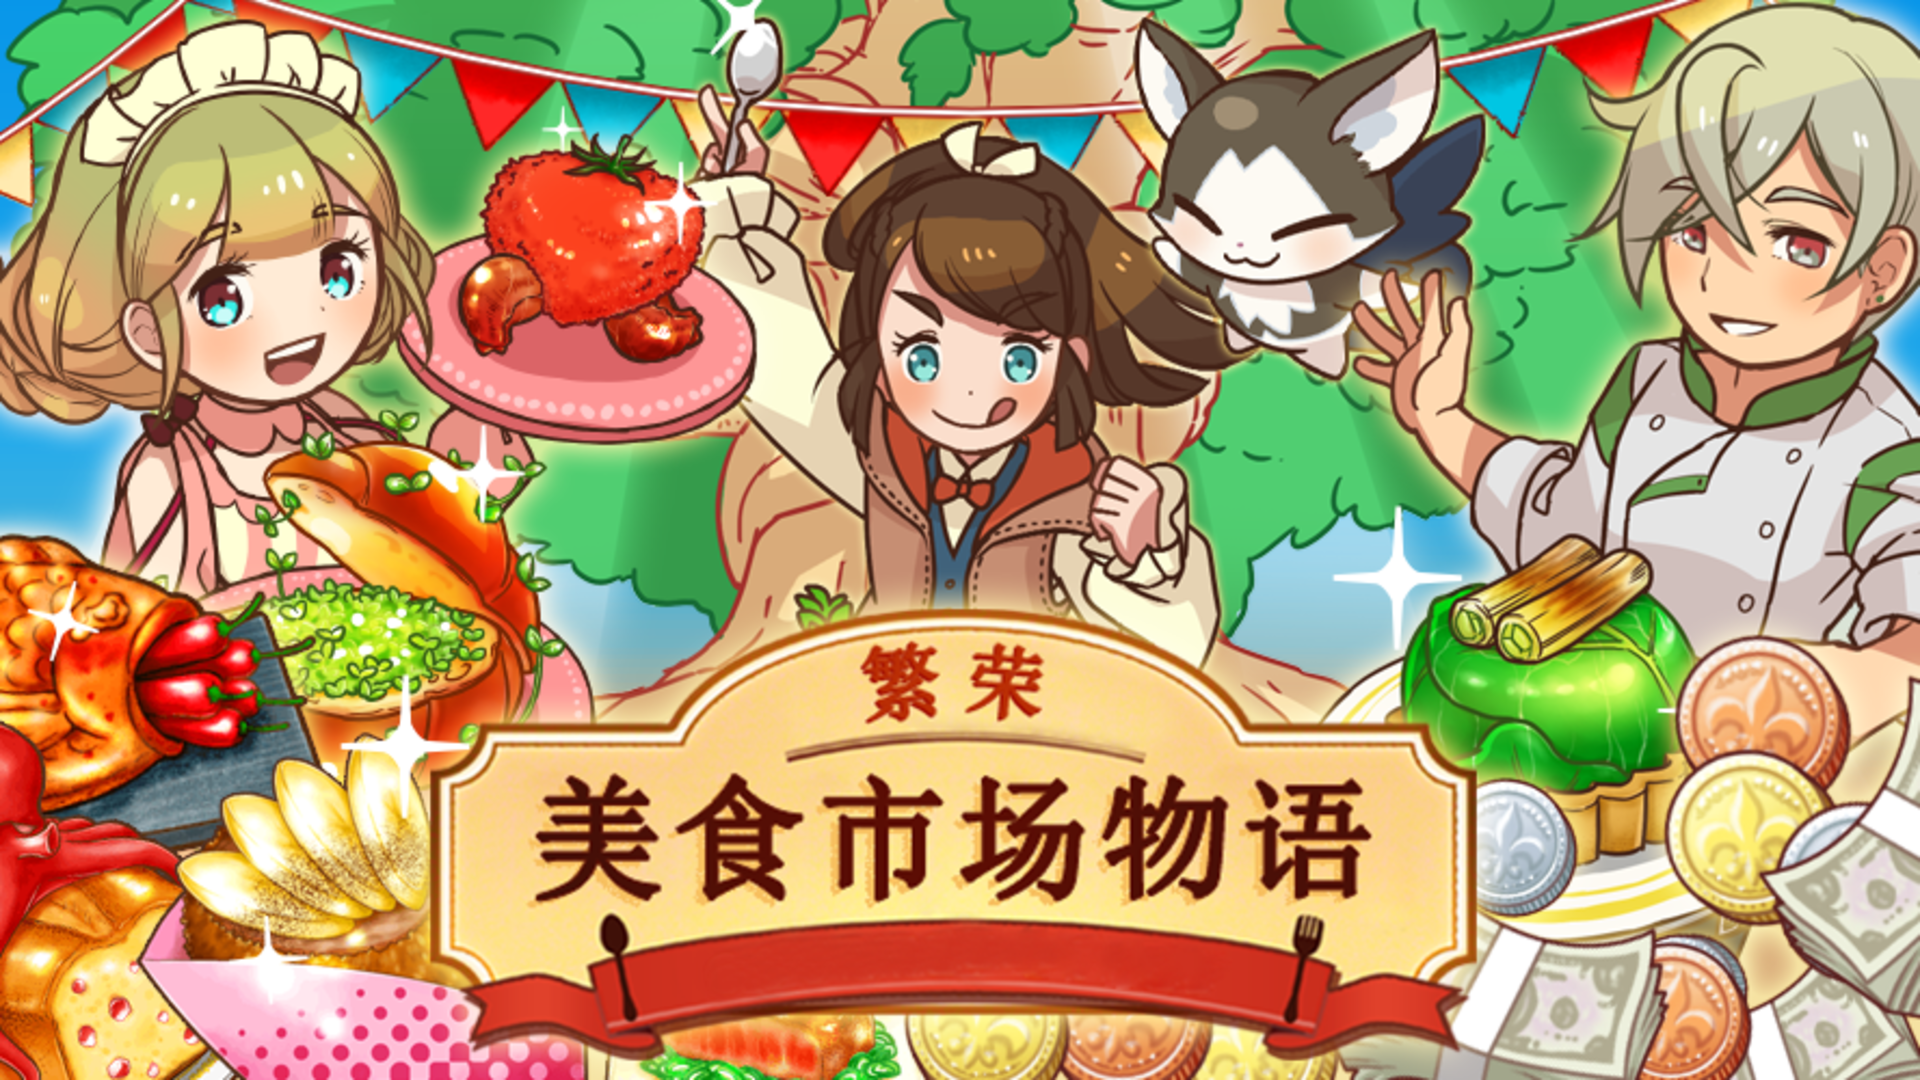 Banner of 豊かな食の物語 